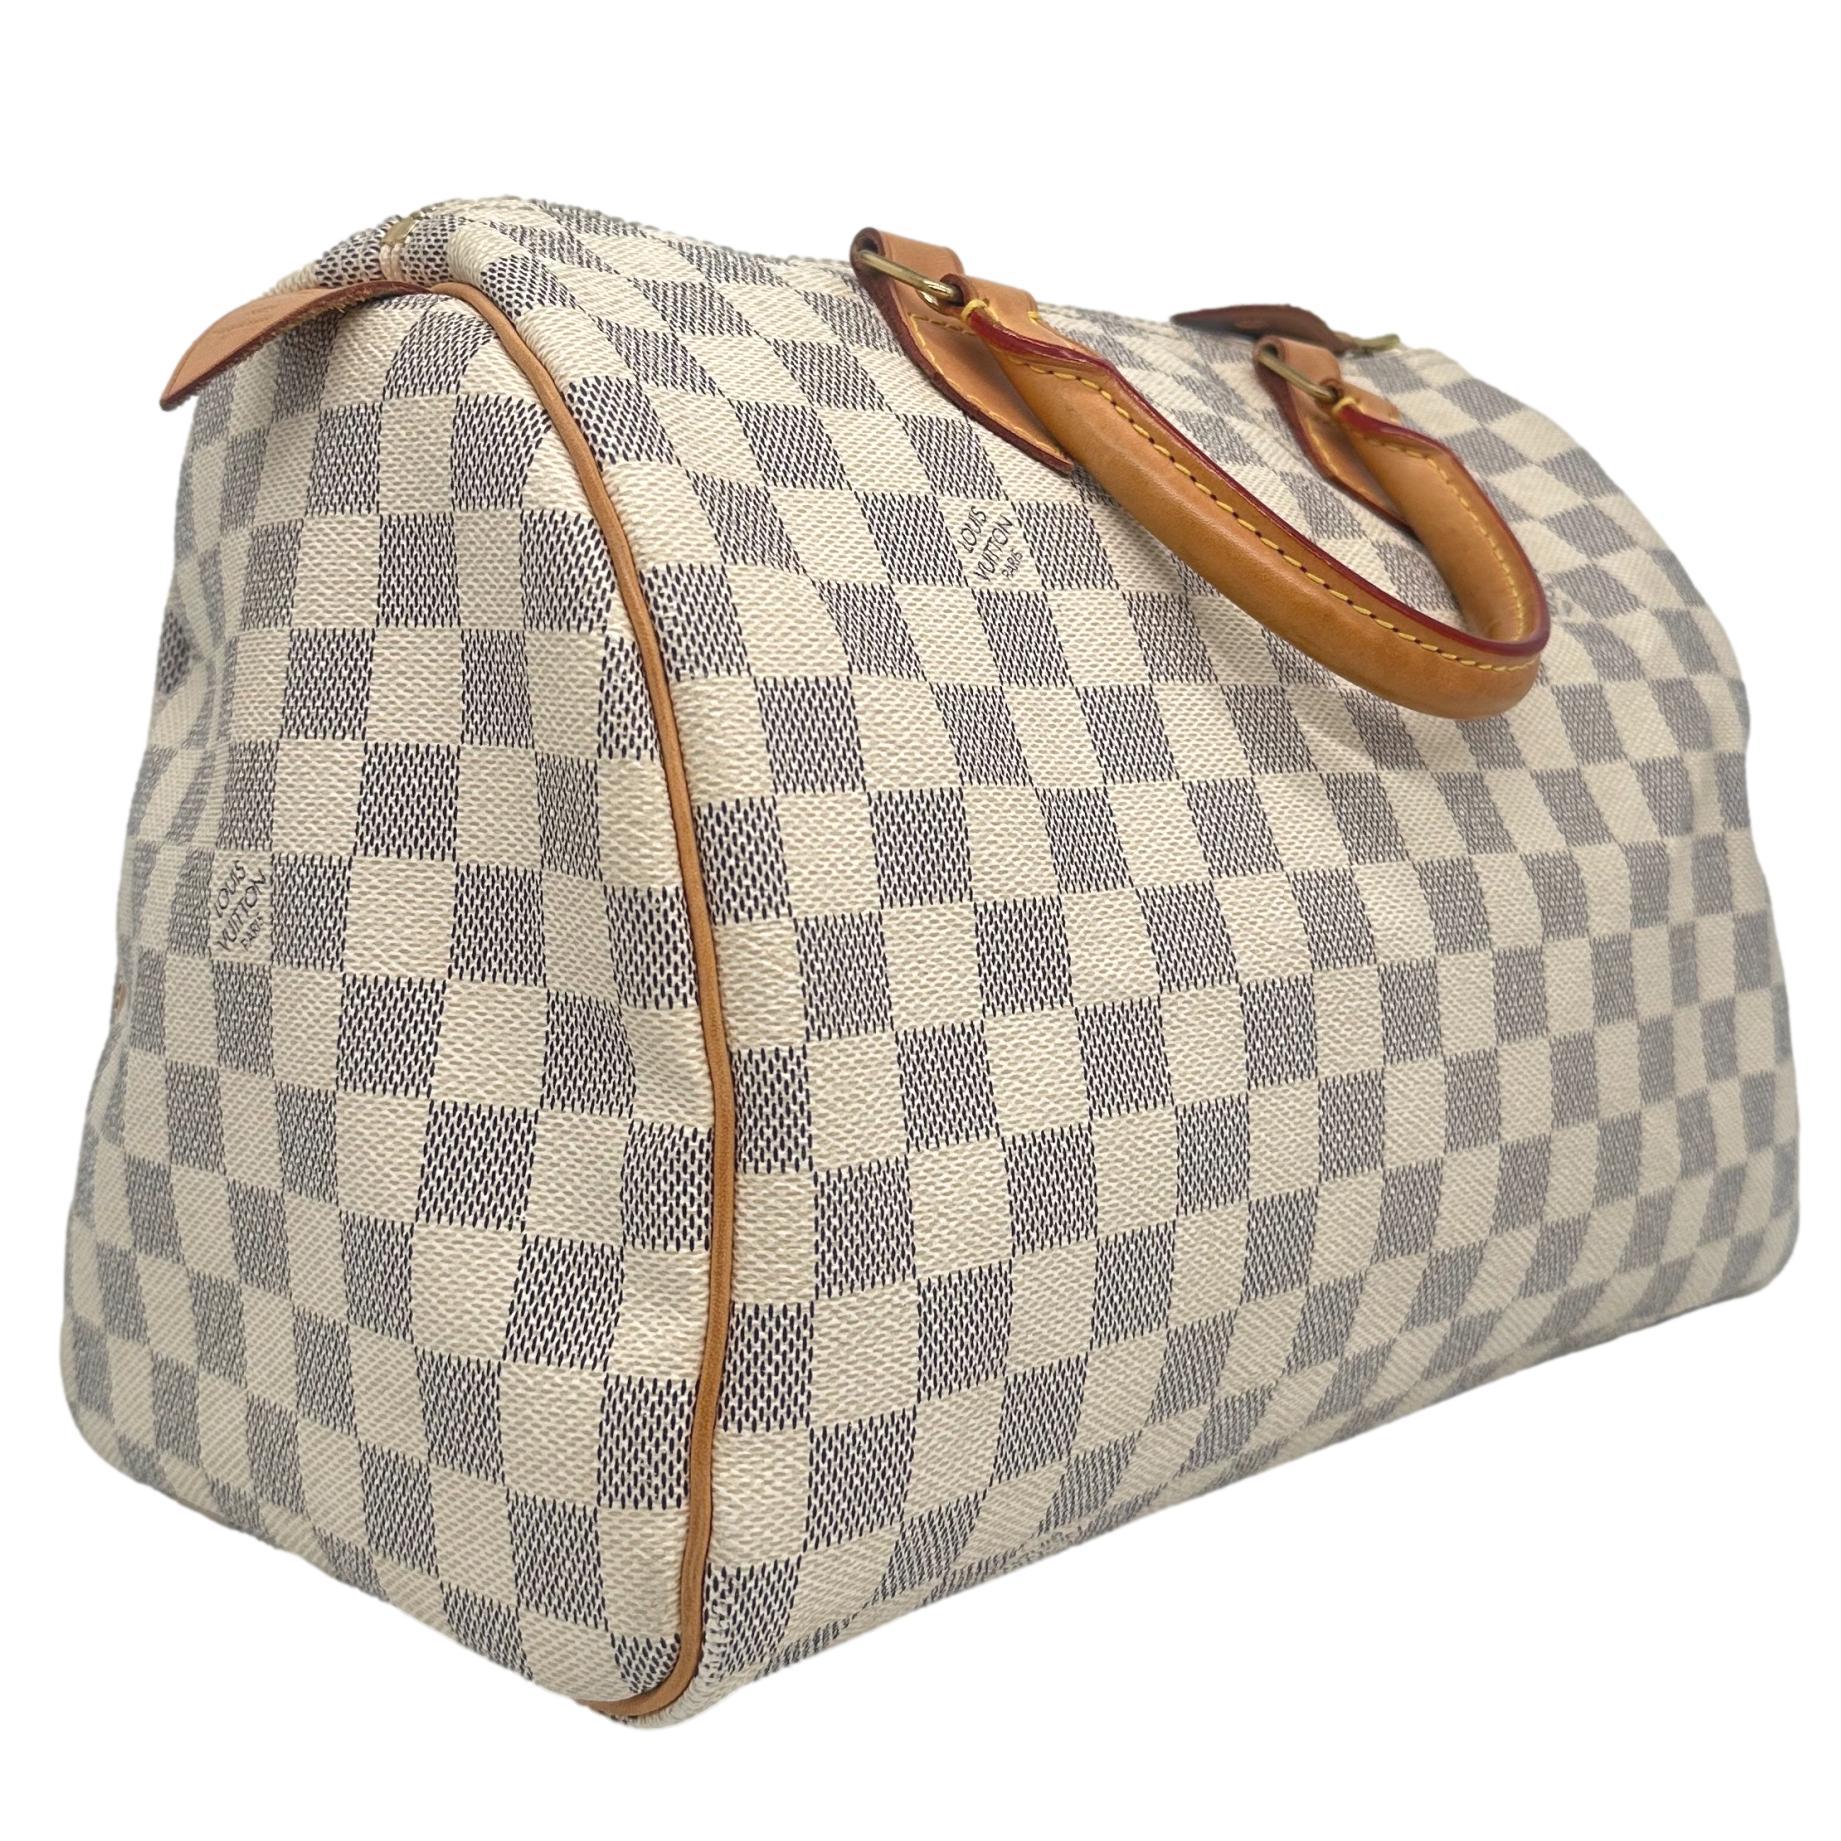 Louis Vuitton Damier Azur Speedy 30 Top Handle Bag, France 2010. For Sale 2